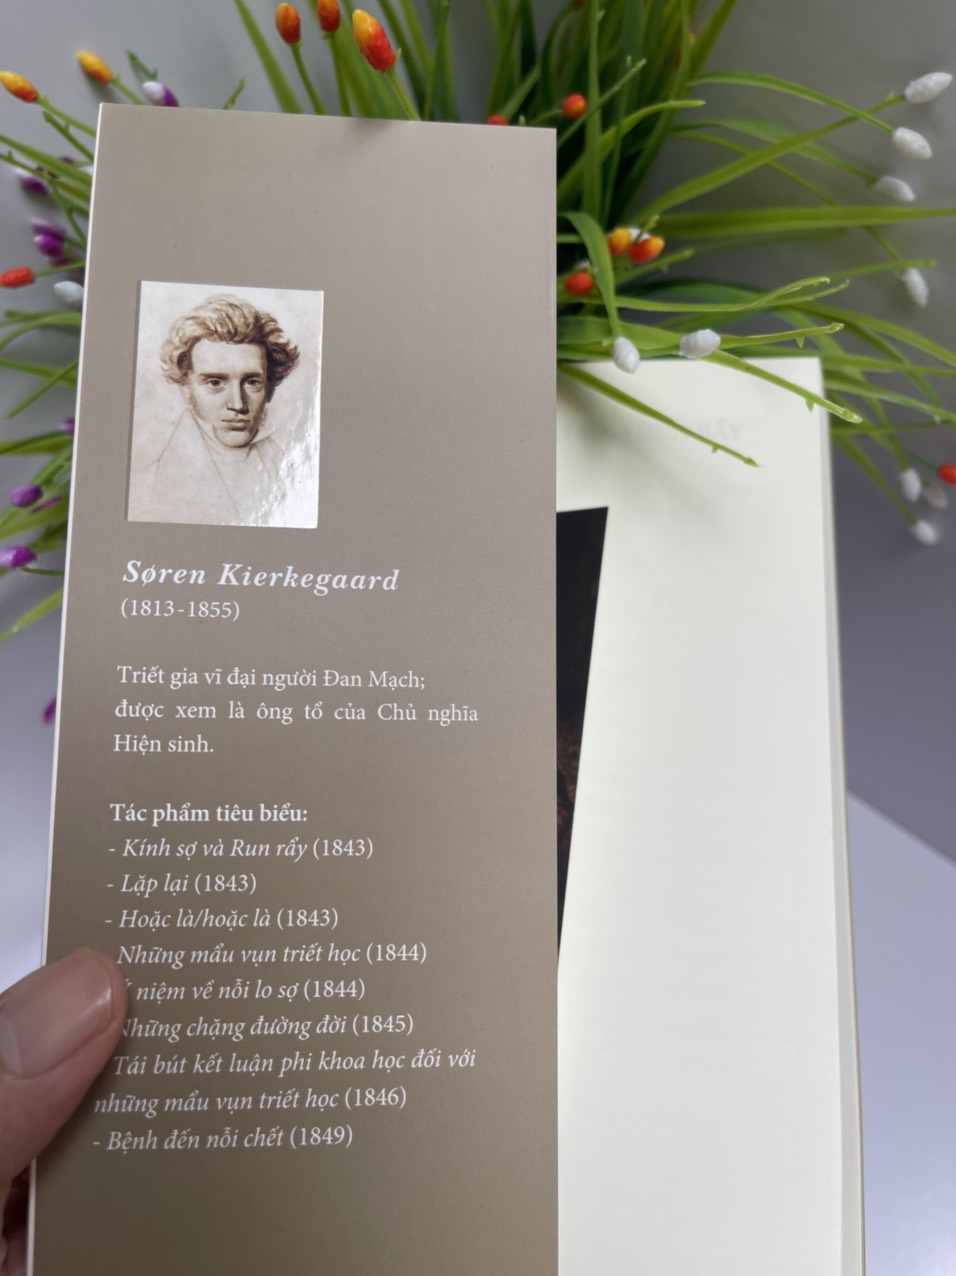 (In lần thứ 5) KÍNH SỢ VÀ RUN RẨY– Søren Kierkegaard – dịch giả Nguyễn Nguyên Phước – Bùi Văn Nam Sơn giới thiệu - Phanbook